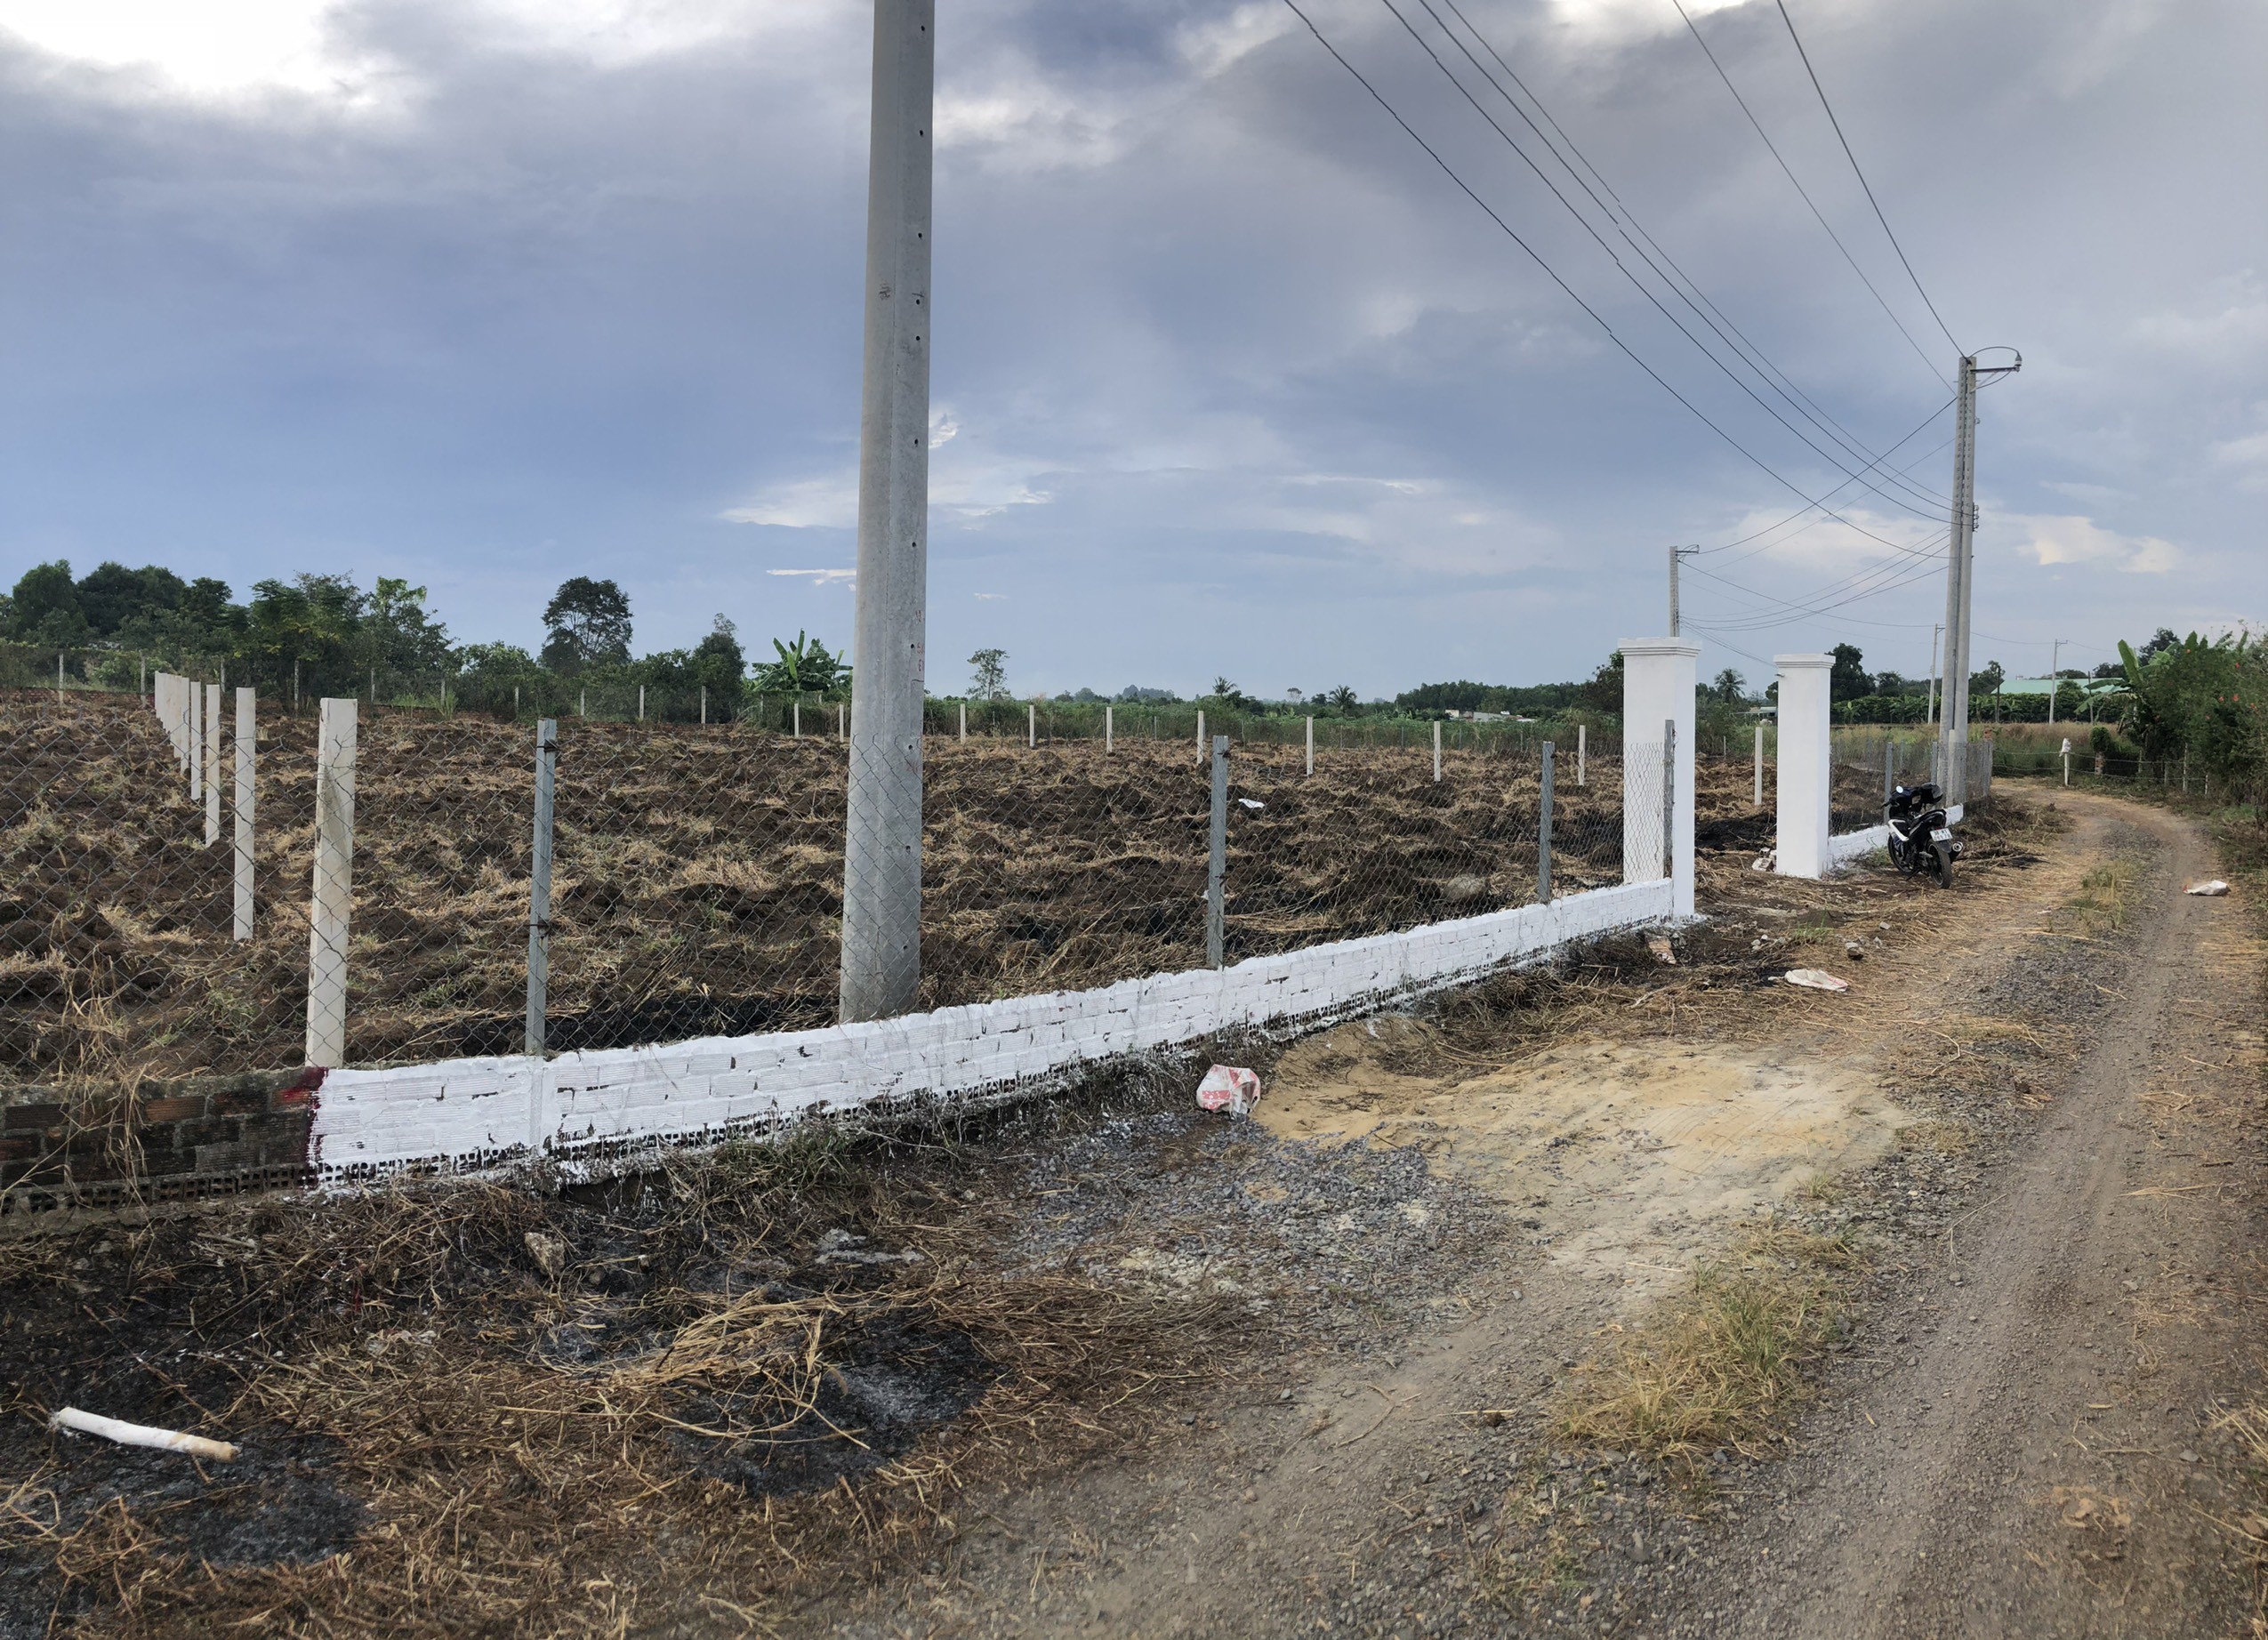 

Sau khi dự án sân bay thi công, mảnh đất hoang hoá rộng 1185m2 ở xã Bình An, huyện Long Thành cũng được quây rào và rao bán với giá 3,6 tỷ đồng.

